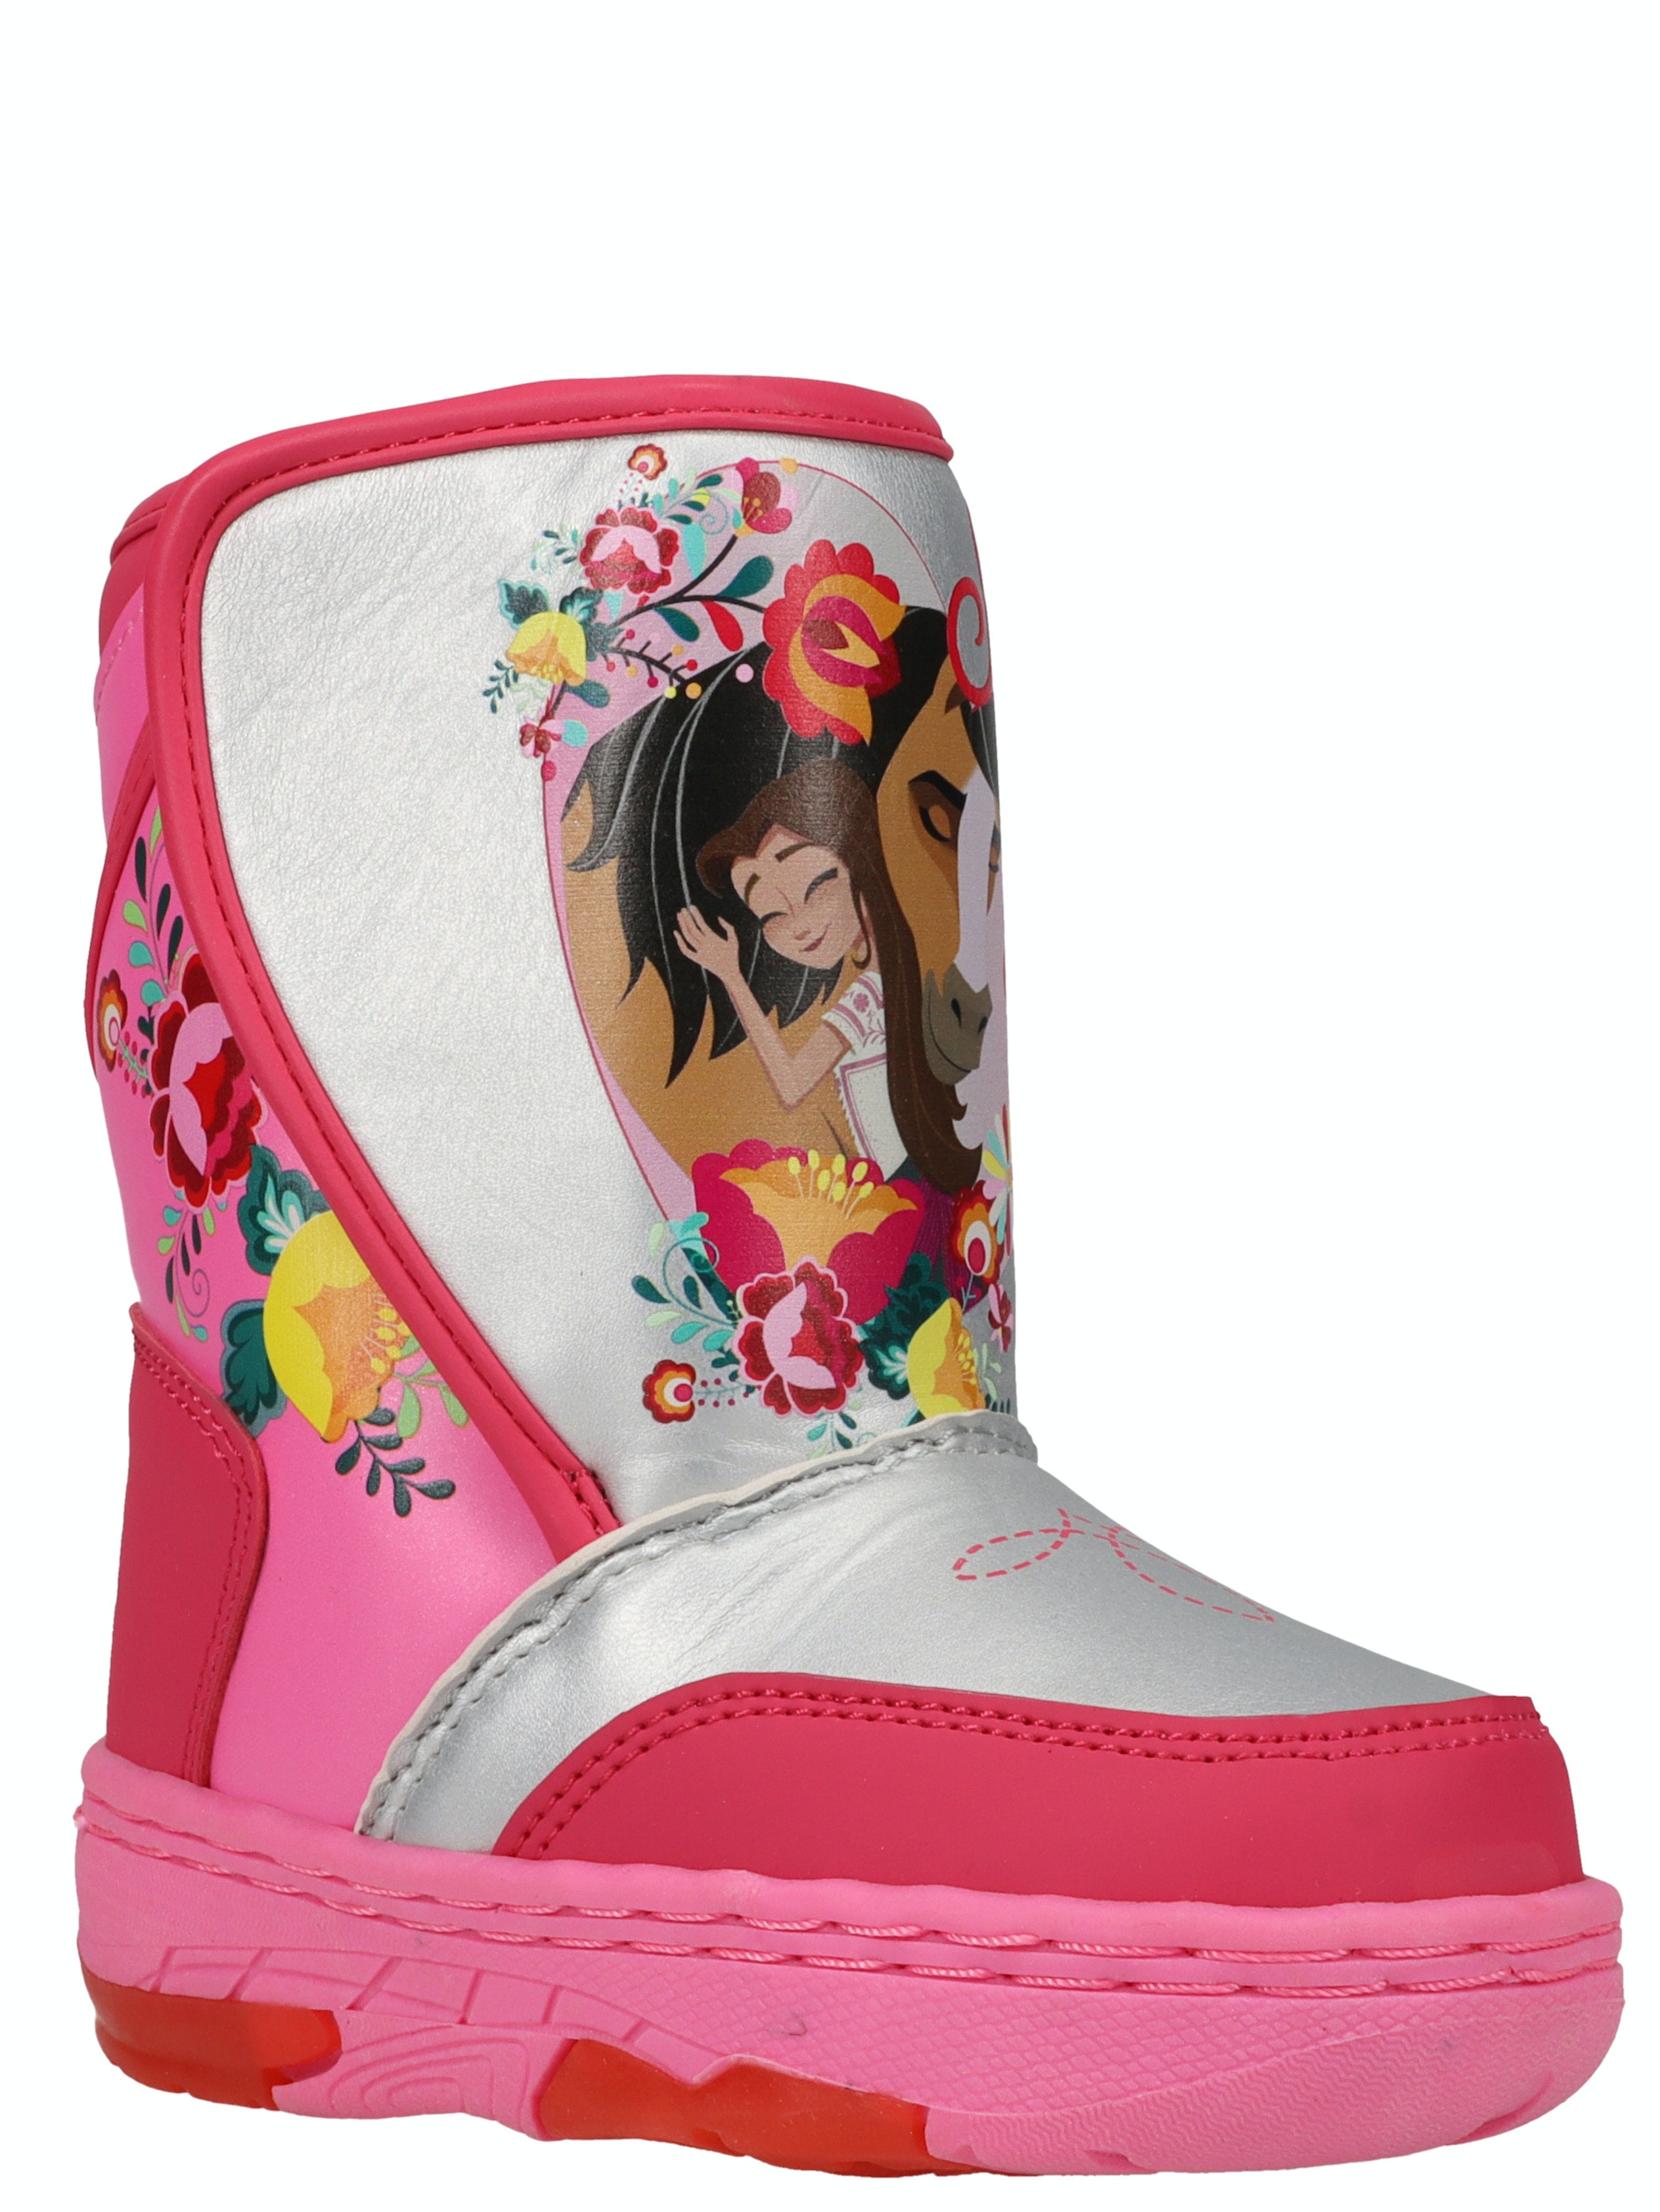 Girls waterproof snow boots Trolls size 7-12.5 